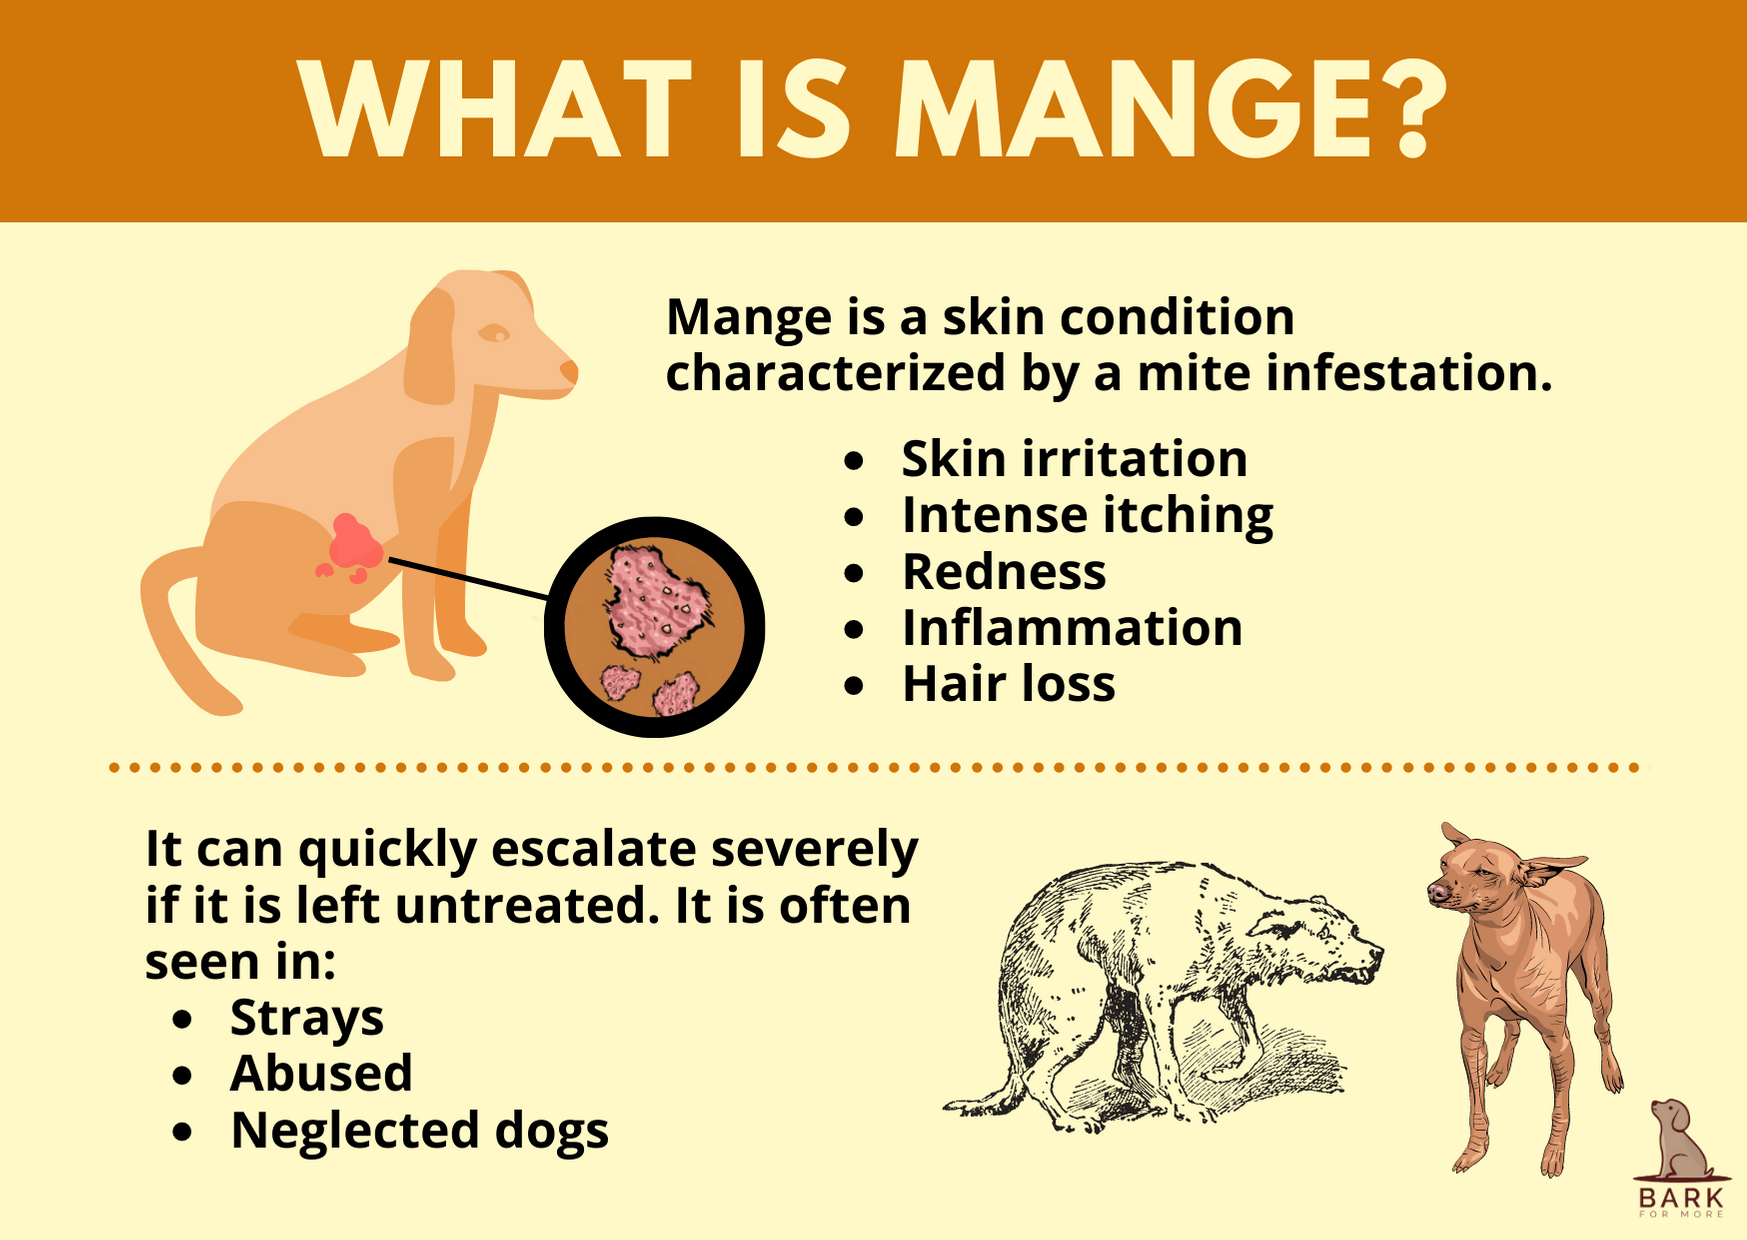 Mange in Dogs Defined